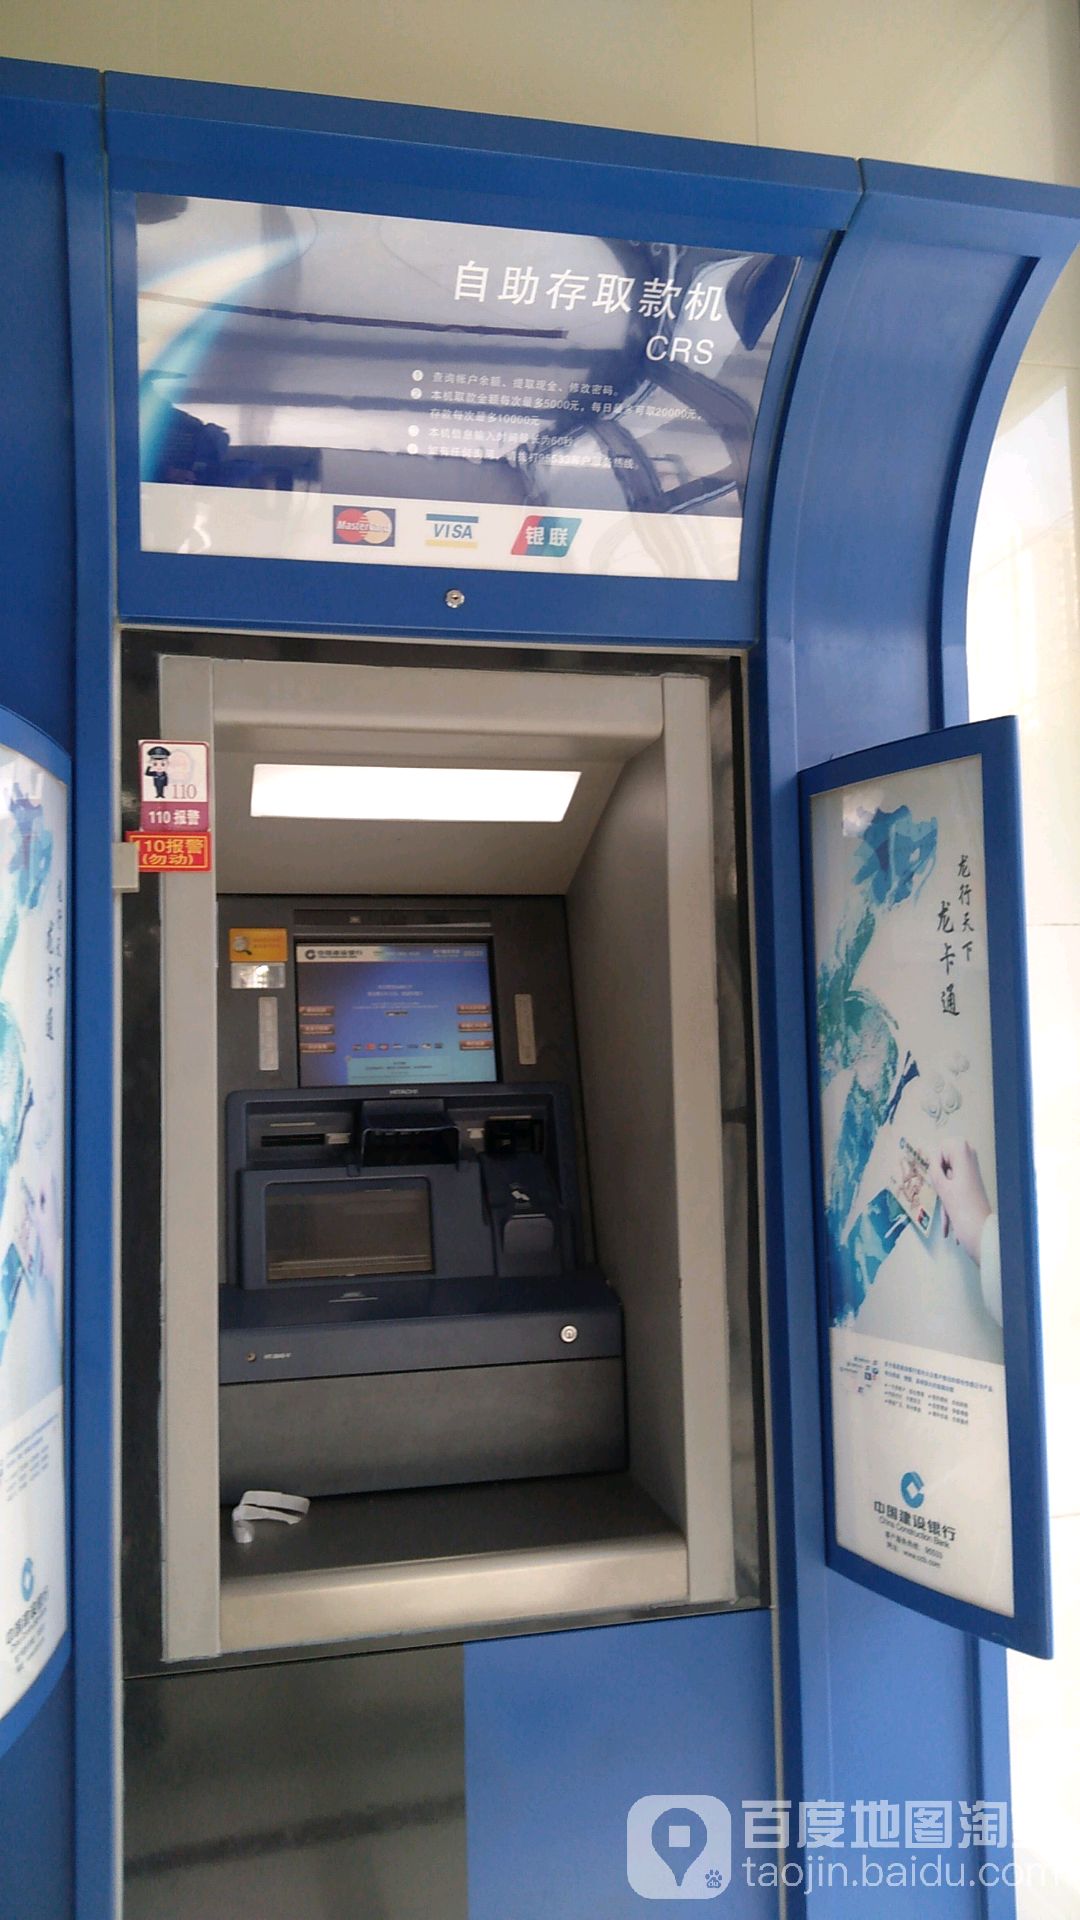 中國建設銀行ATM(西寧萬達廣場支行)